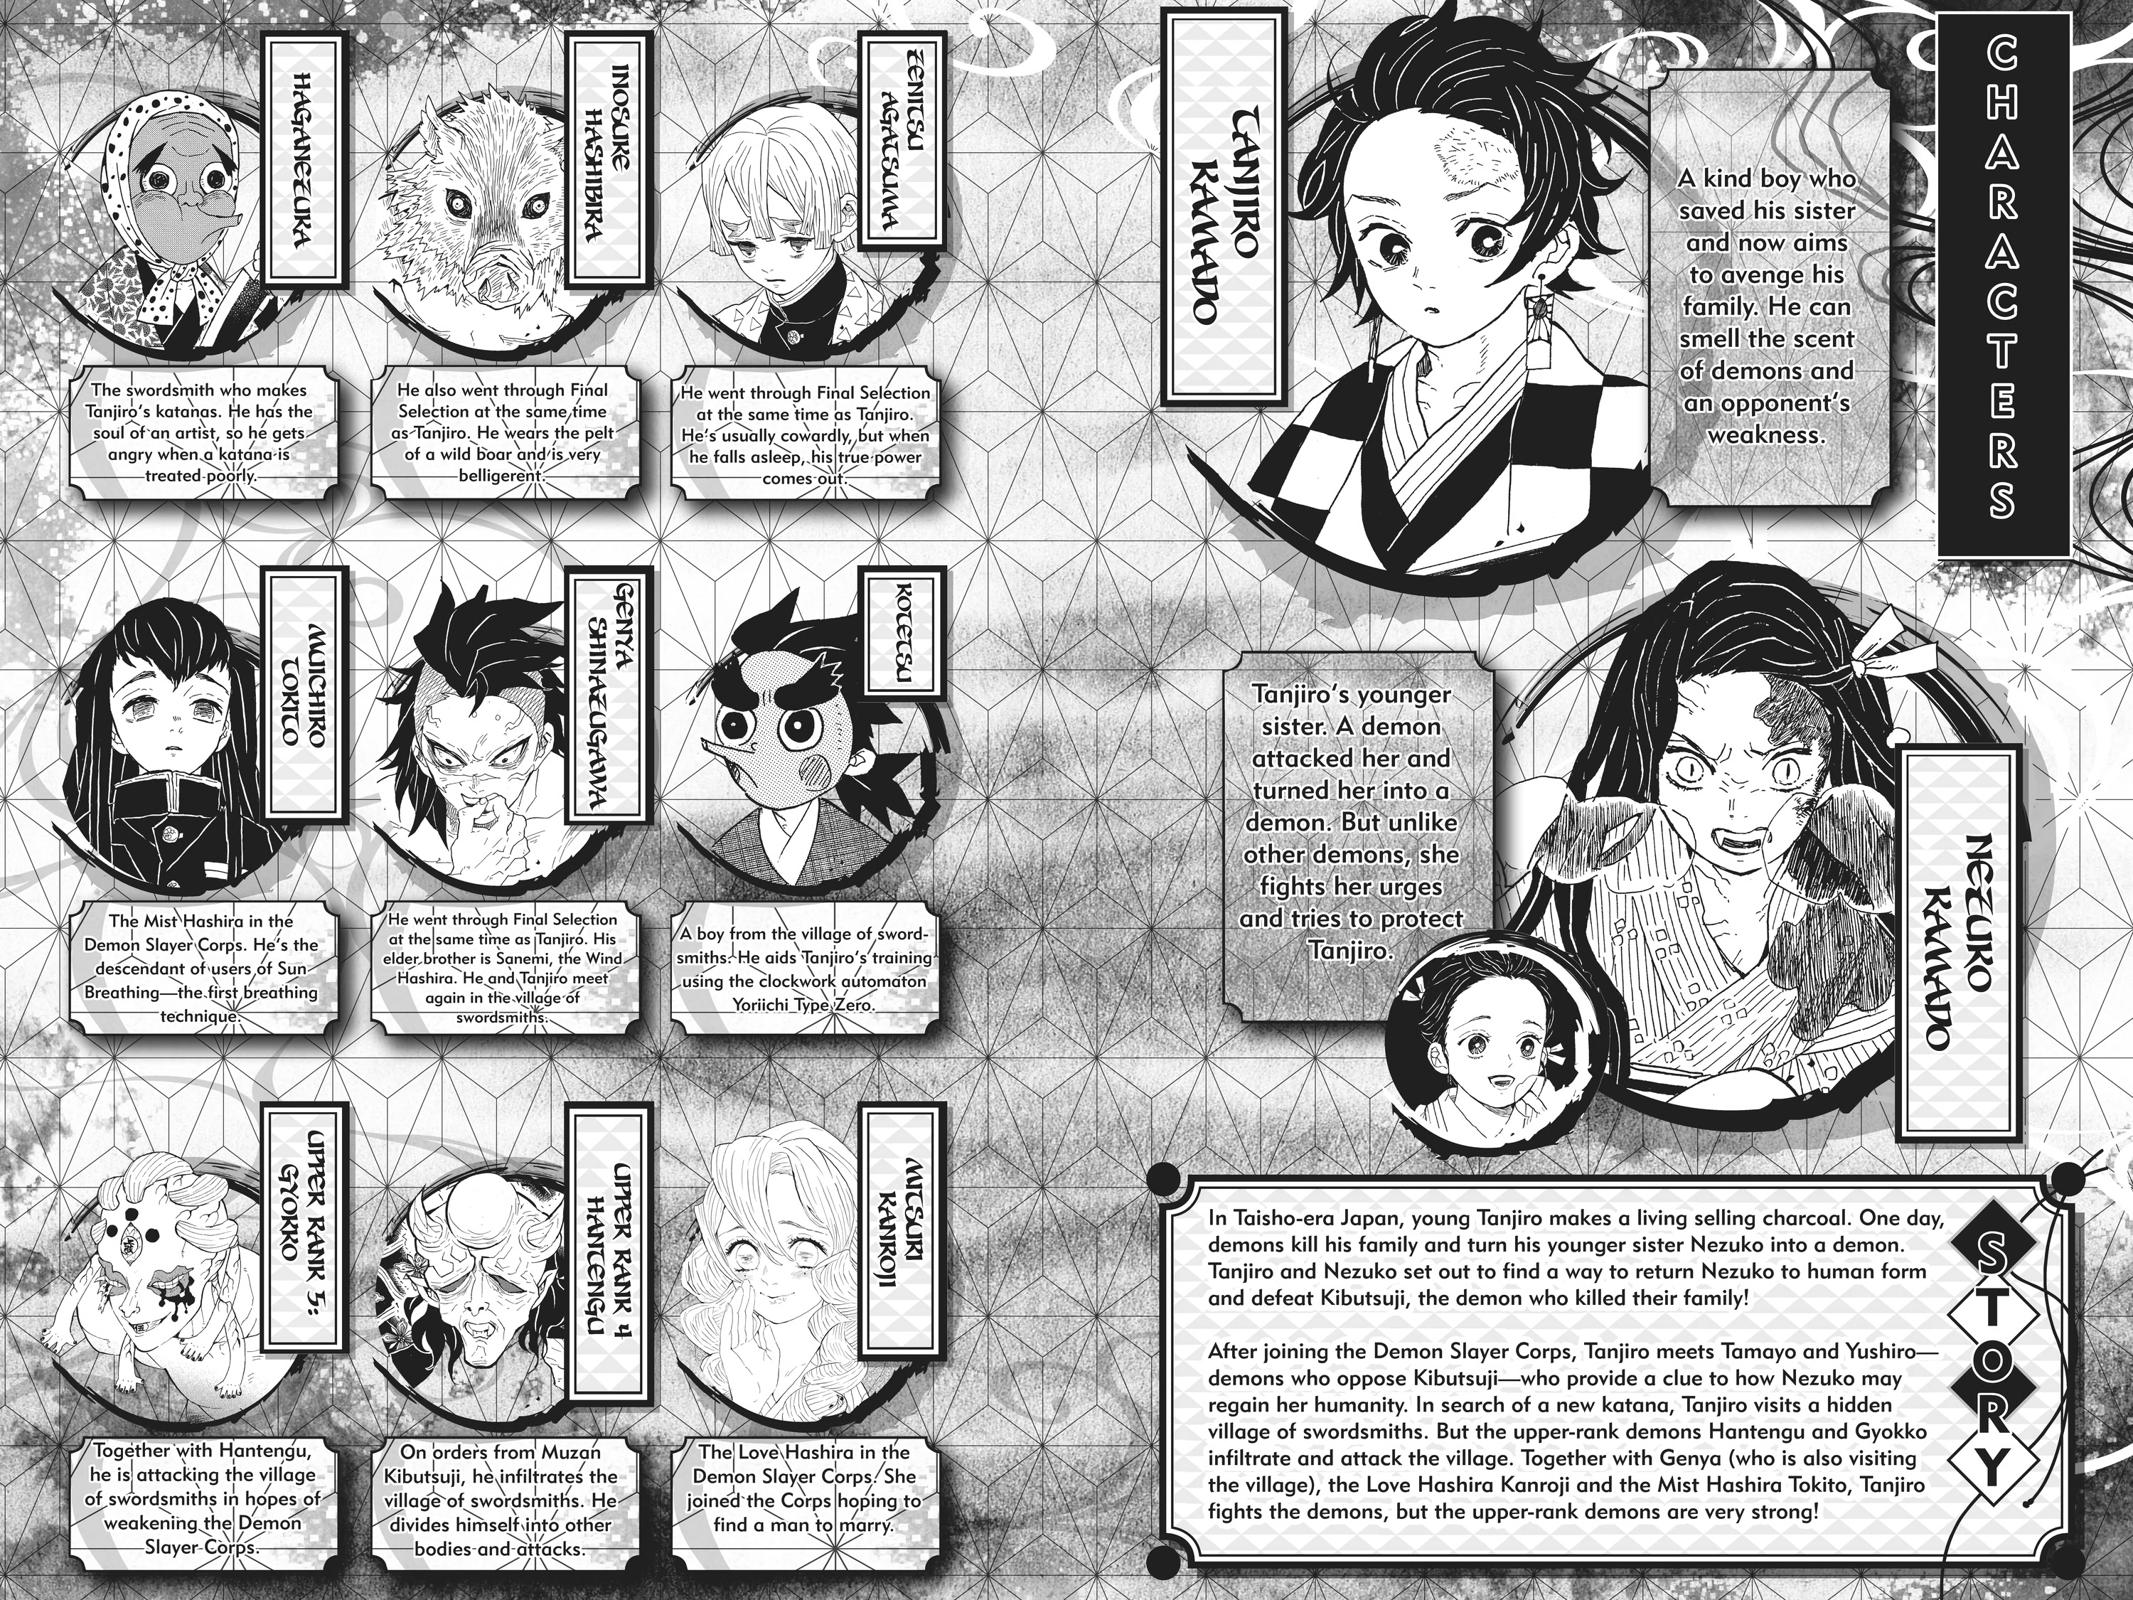 Demon Slayer Manga Manga Chapter - 116 - image 4